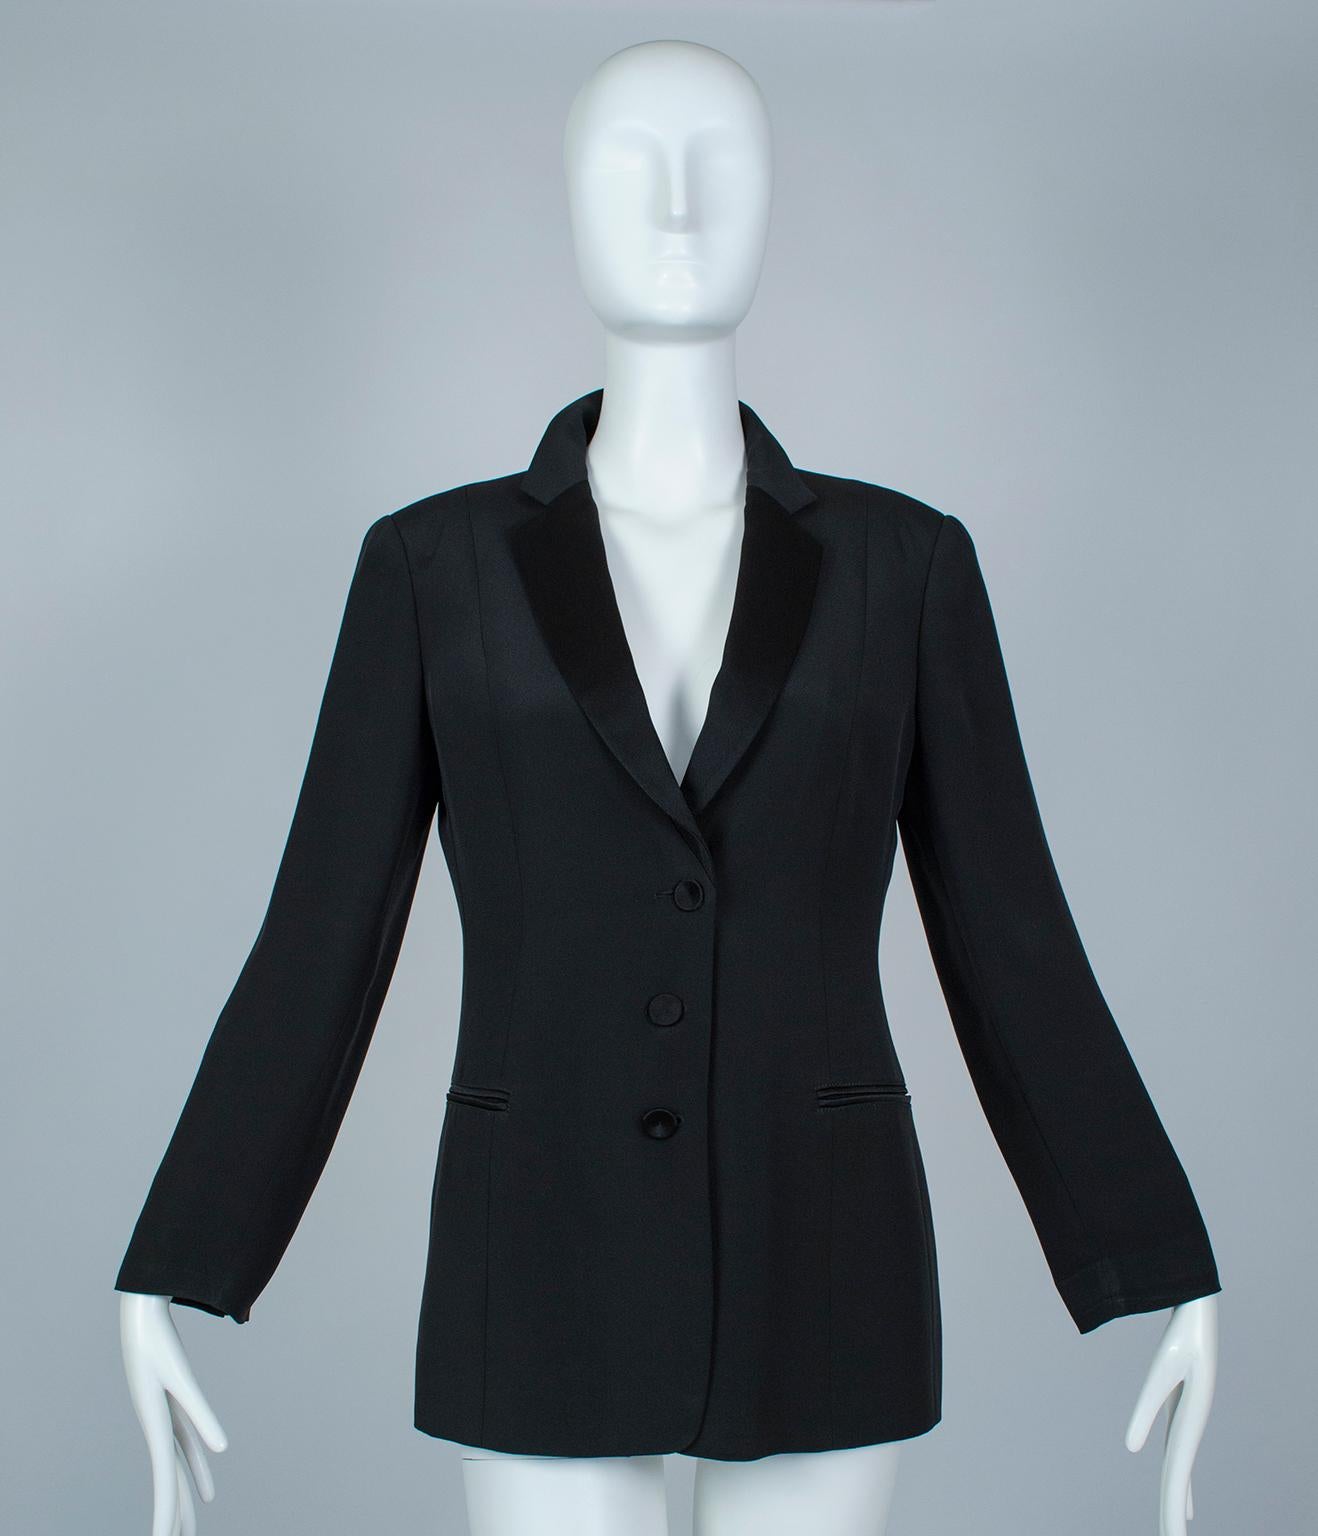 Giorgio Armani ist bekannt für seine damenhaften, aber eleganten Designs und meisterhaften Stoffe und stellt eine Damenjacke her, die nie enttäuscht. Seine Interpretation der zeitlosen Smokingjacke weist mehr Kurven auf als das St.